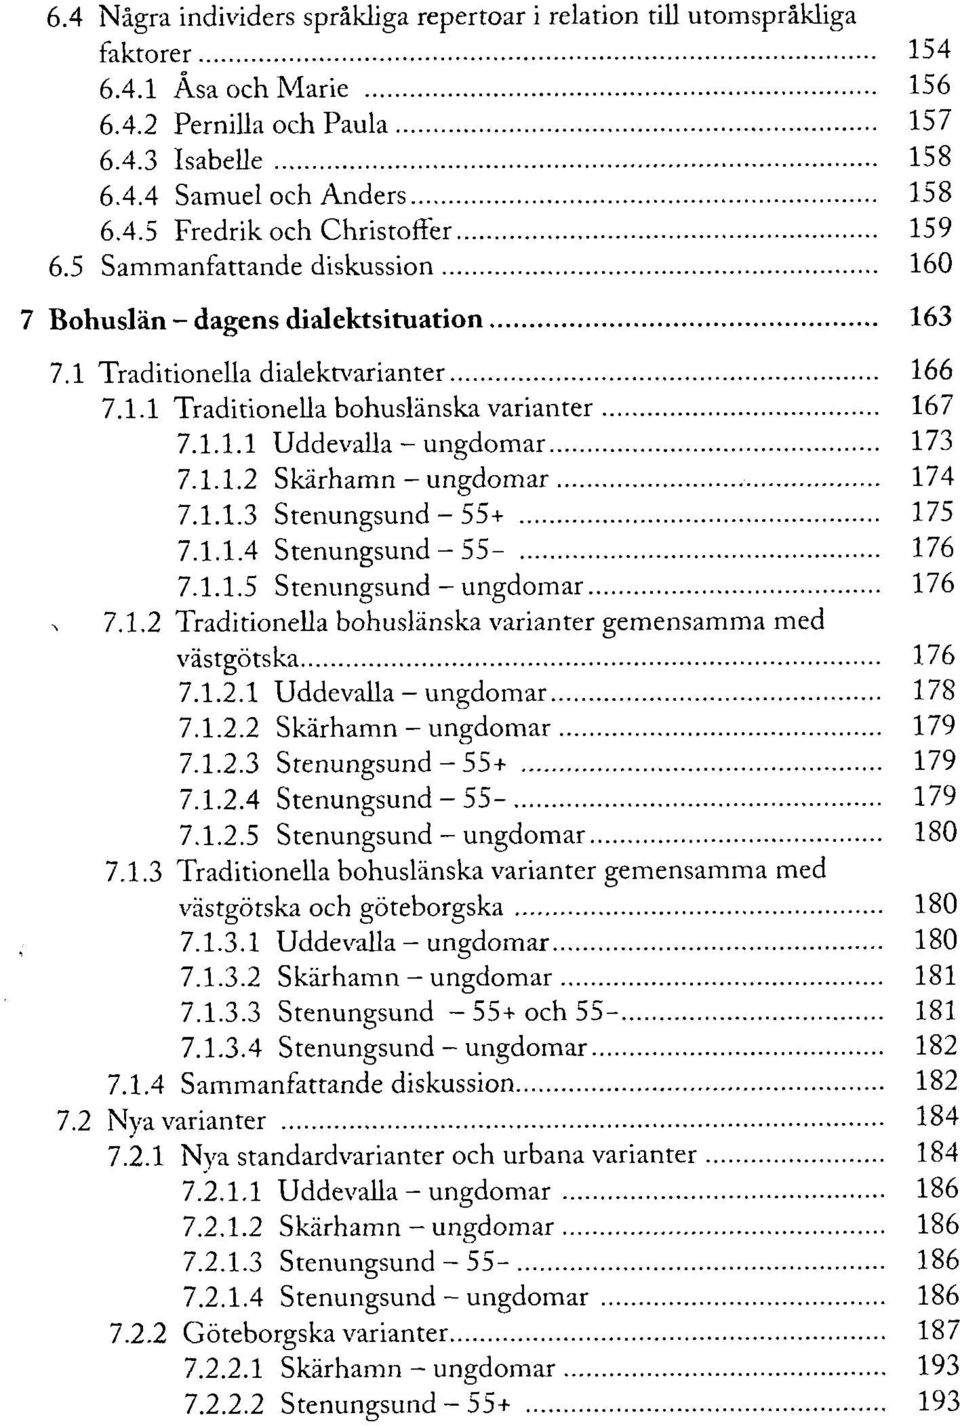 1.1.3 Stenungsund - 55+ 175 7.1.1.4 Stenungsund - 55-176 7.1.1.5 Stenungsund - ungdomar 176 7.1.2 Traditionella bohuslänska varianter gemensamma med västgötska 176 7.1.2.1 Uddevalla - ungdomar 178 7.